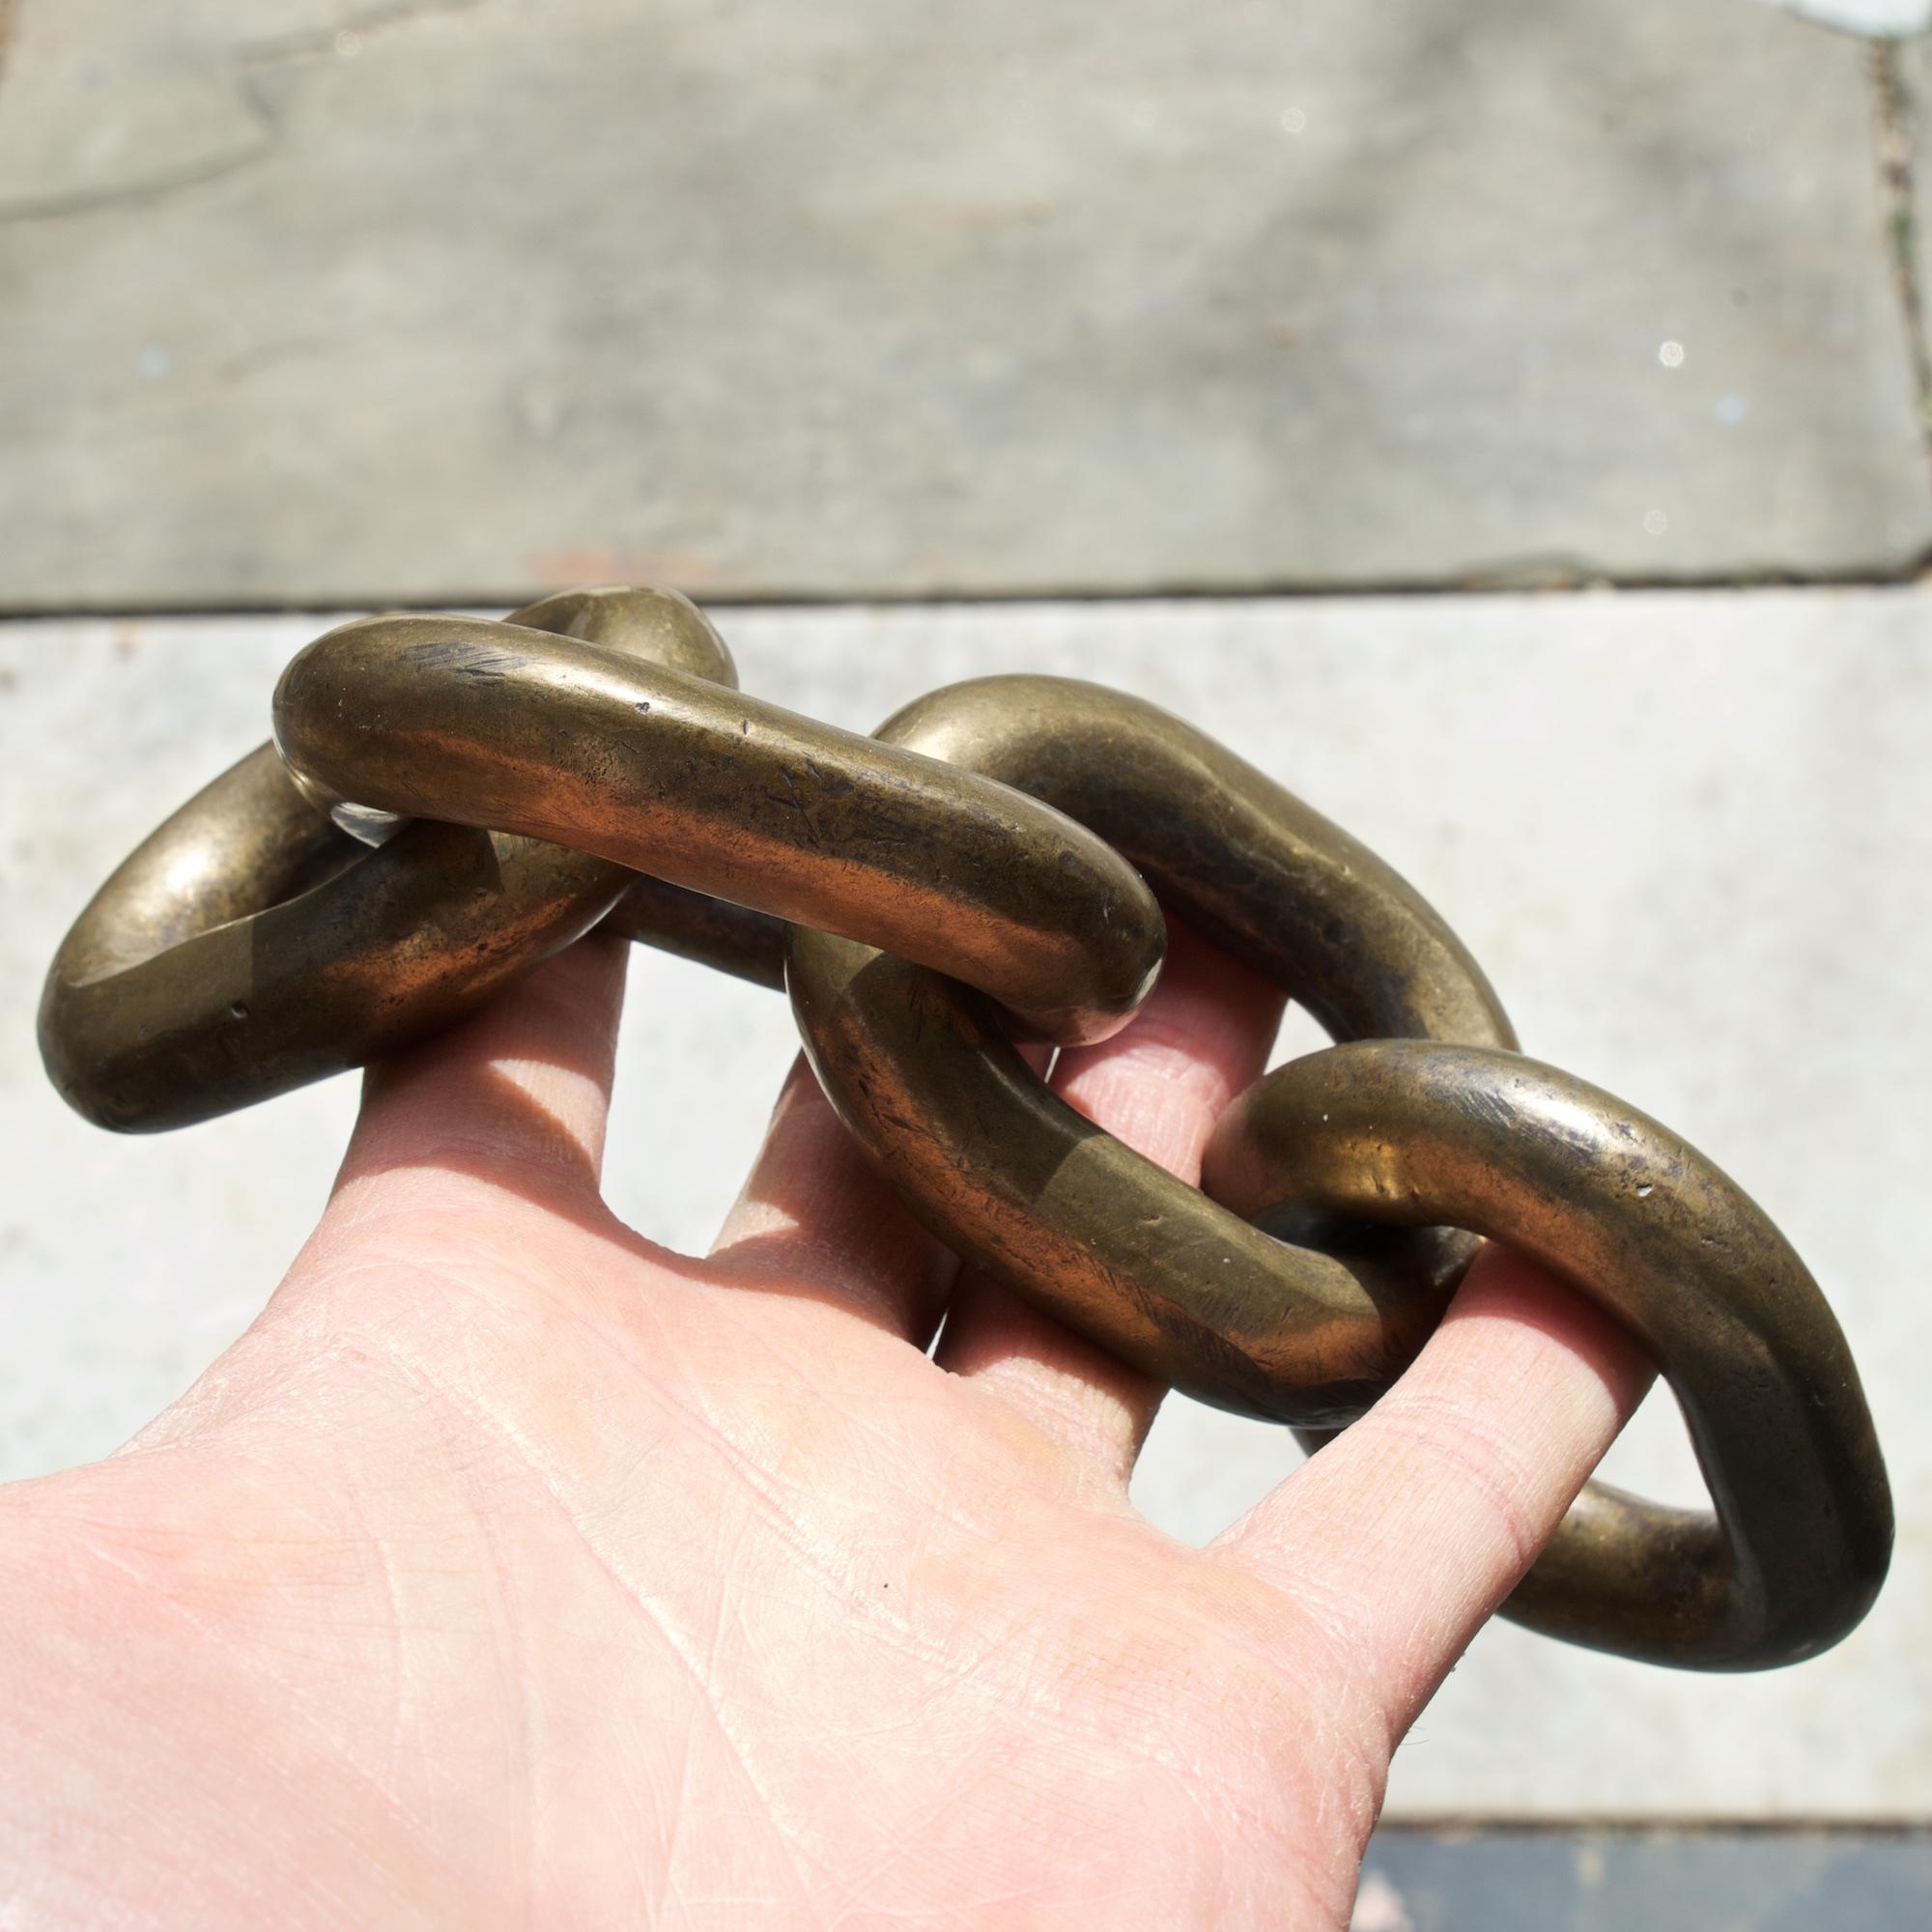 Cast 1960s Brass Chain Links Sculpture Paperweight 